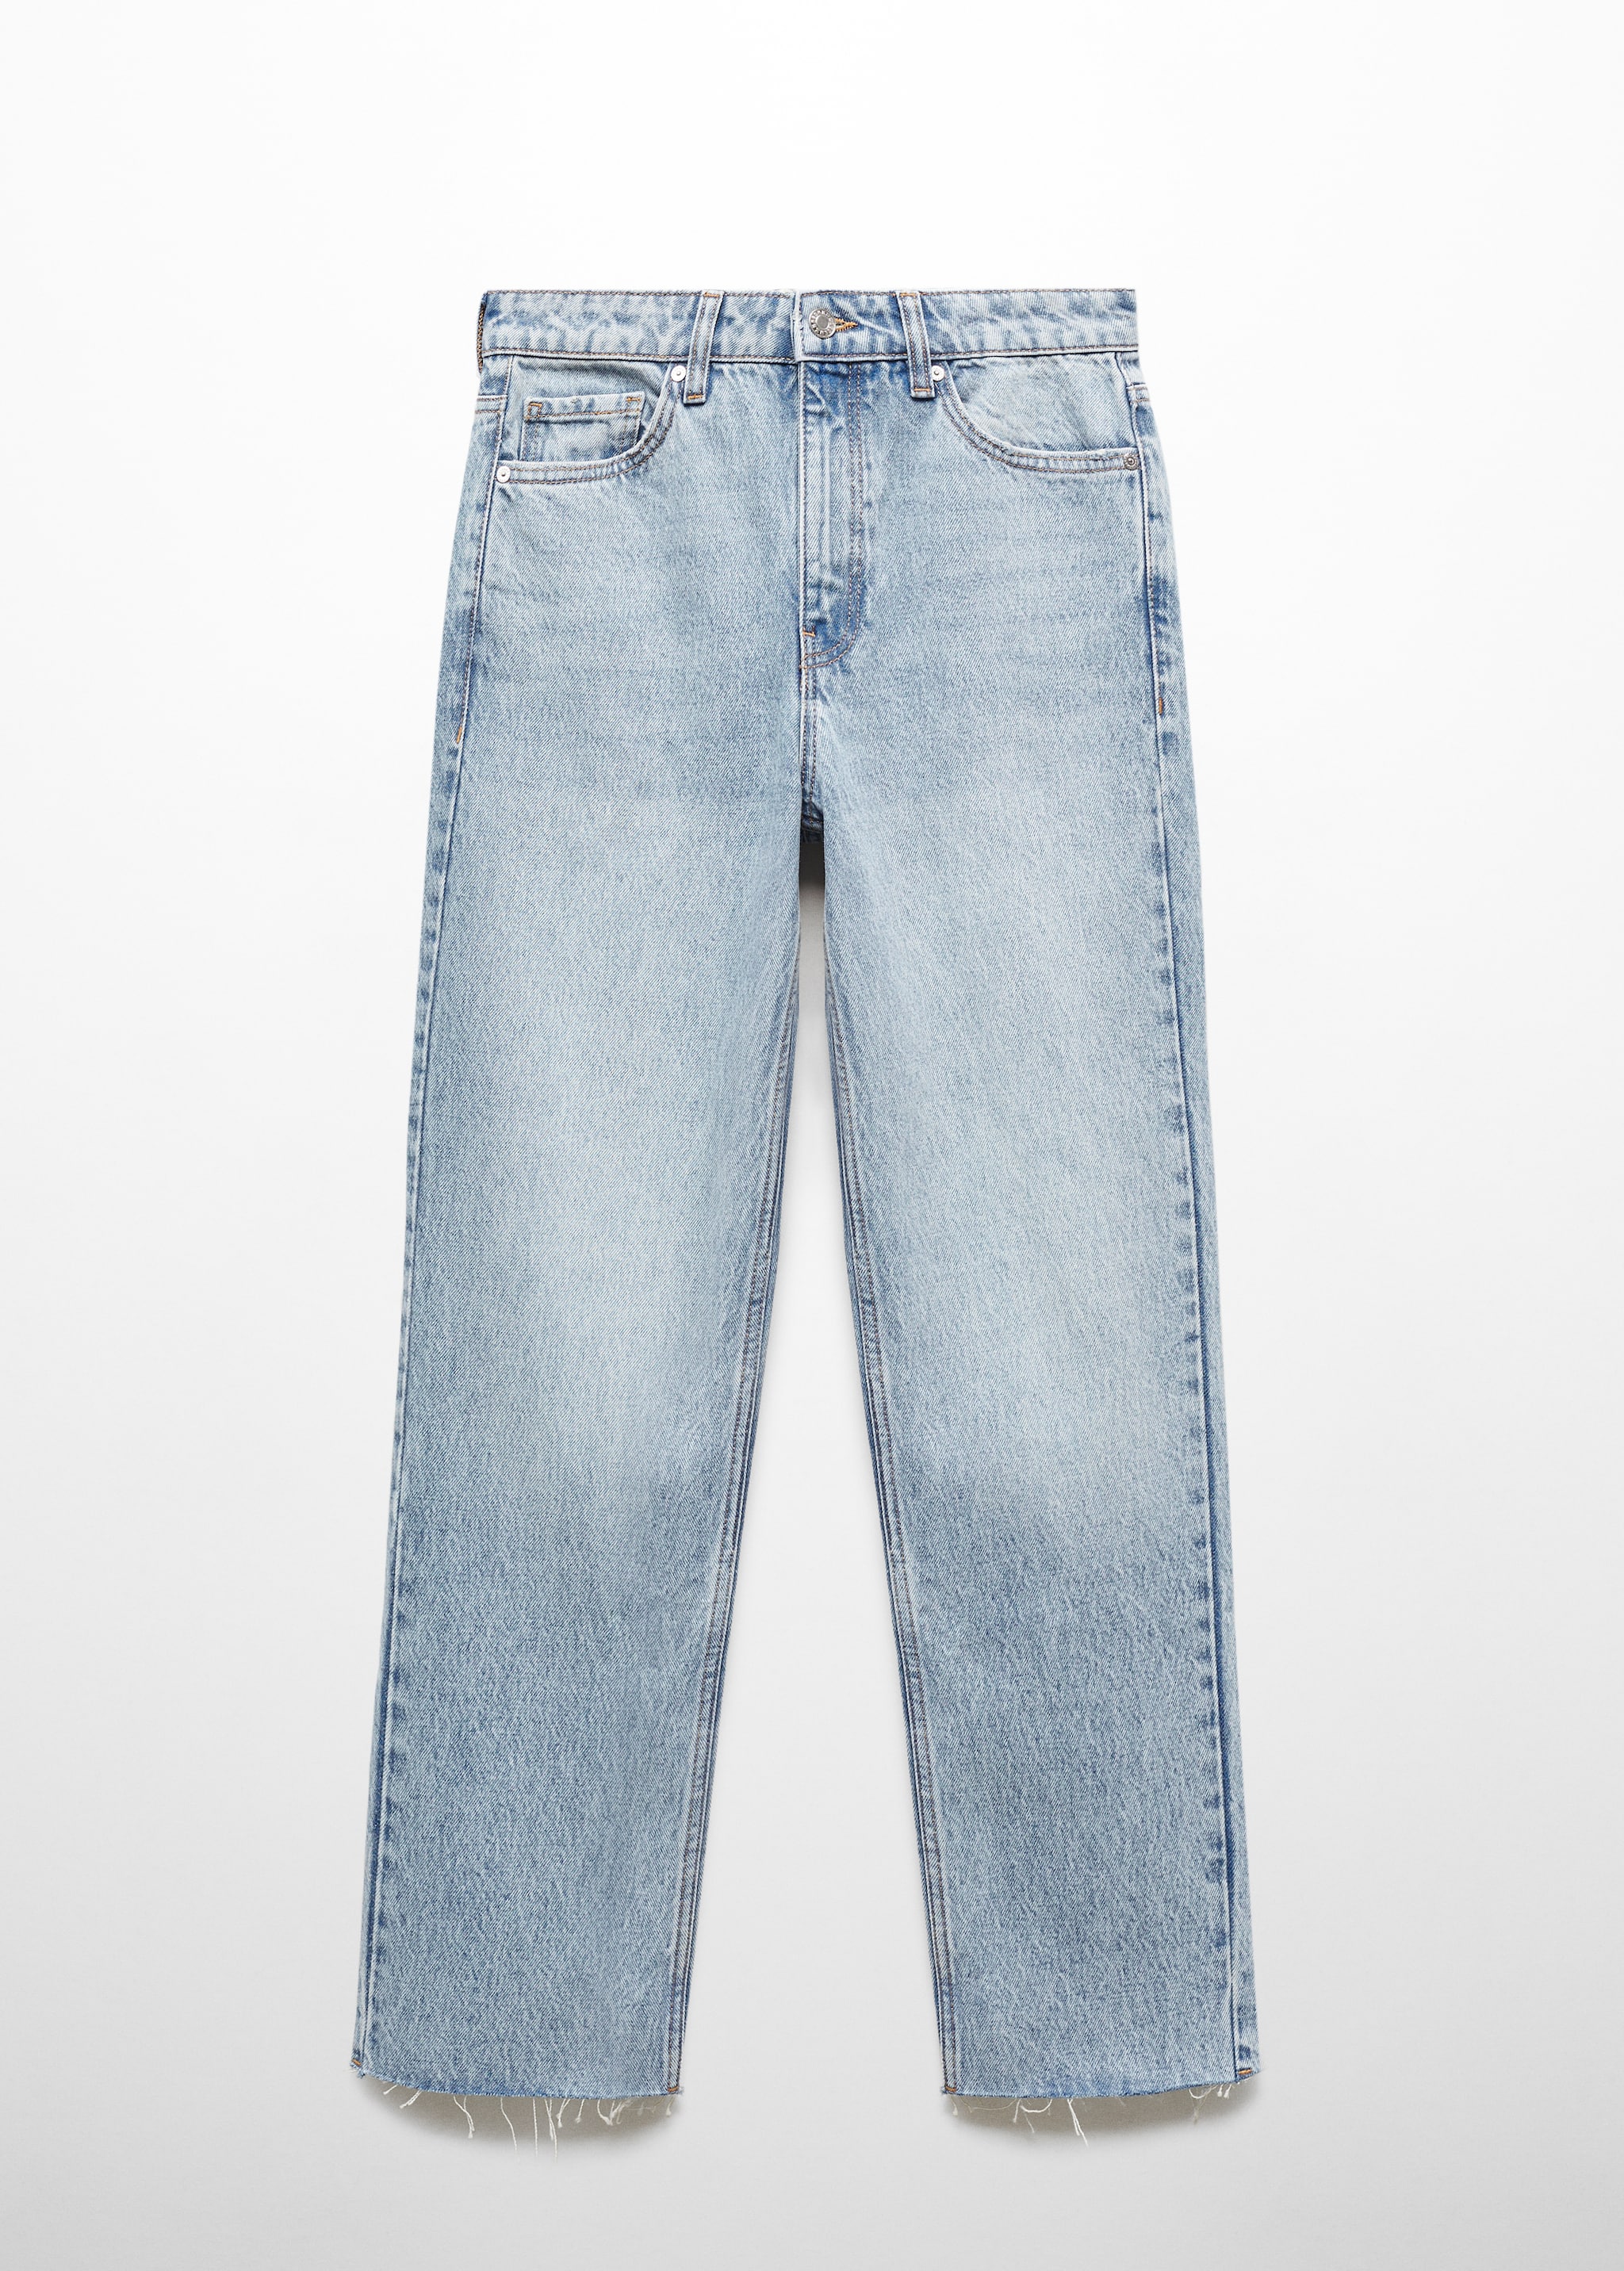 Прямые укороченные джинсы - Изделие без модели